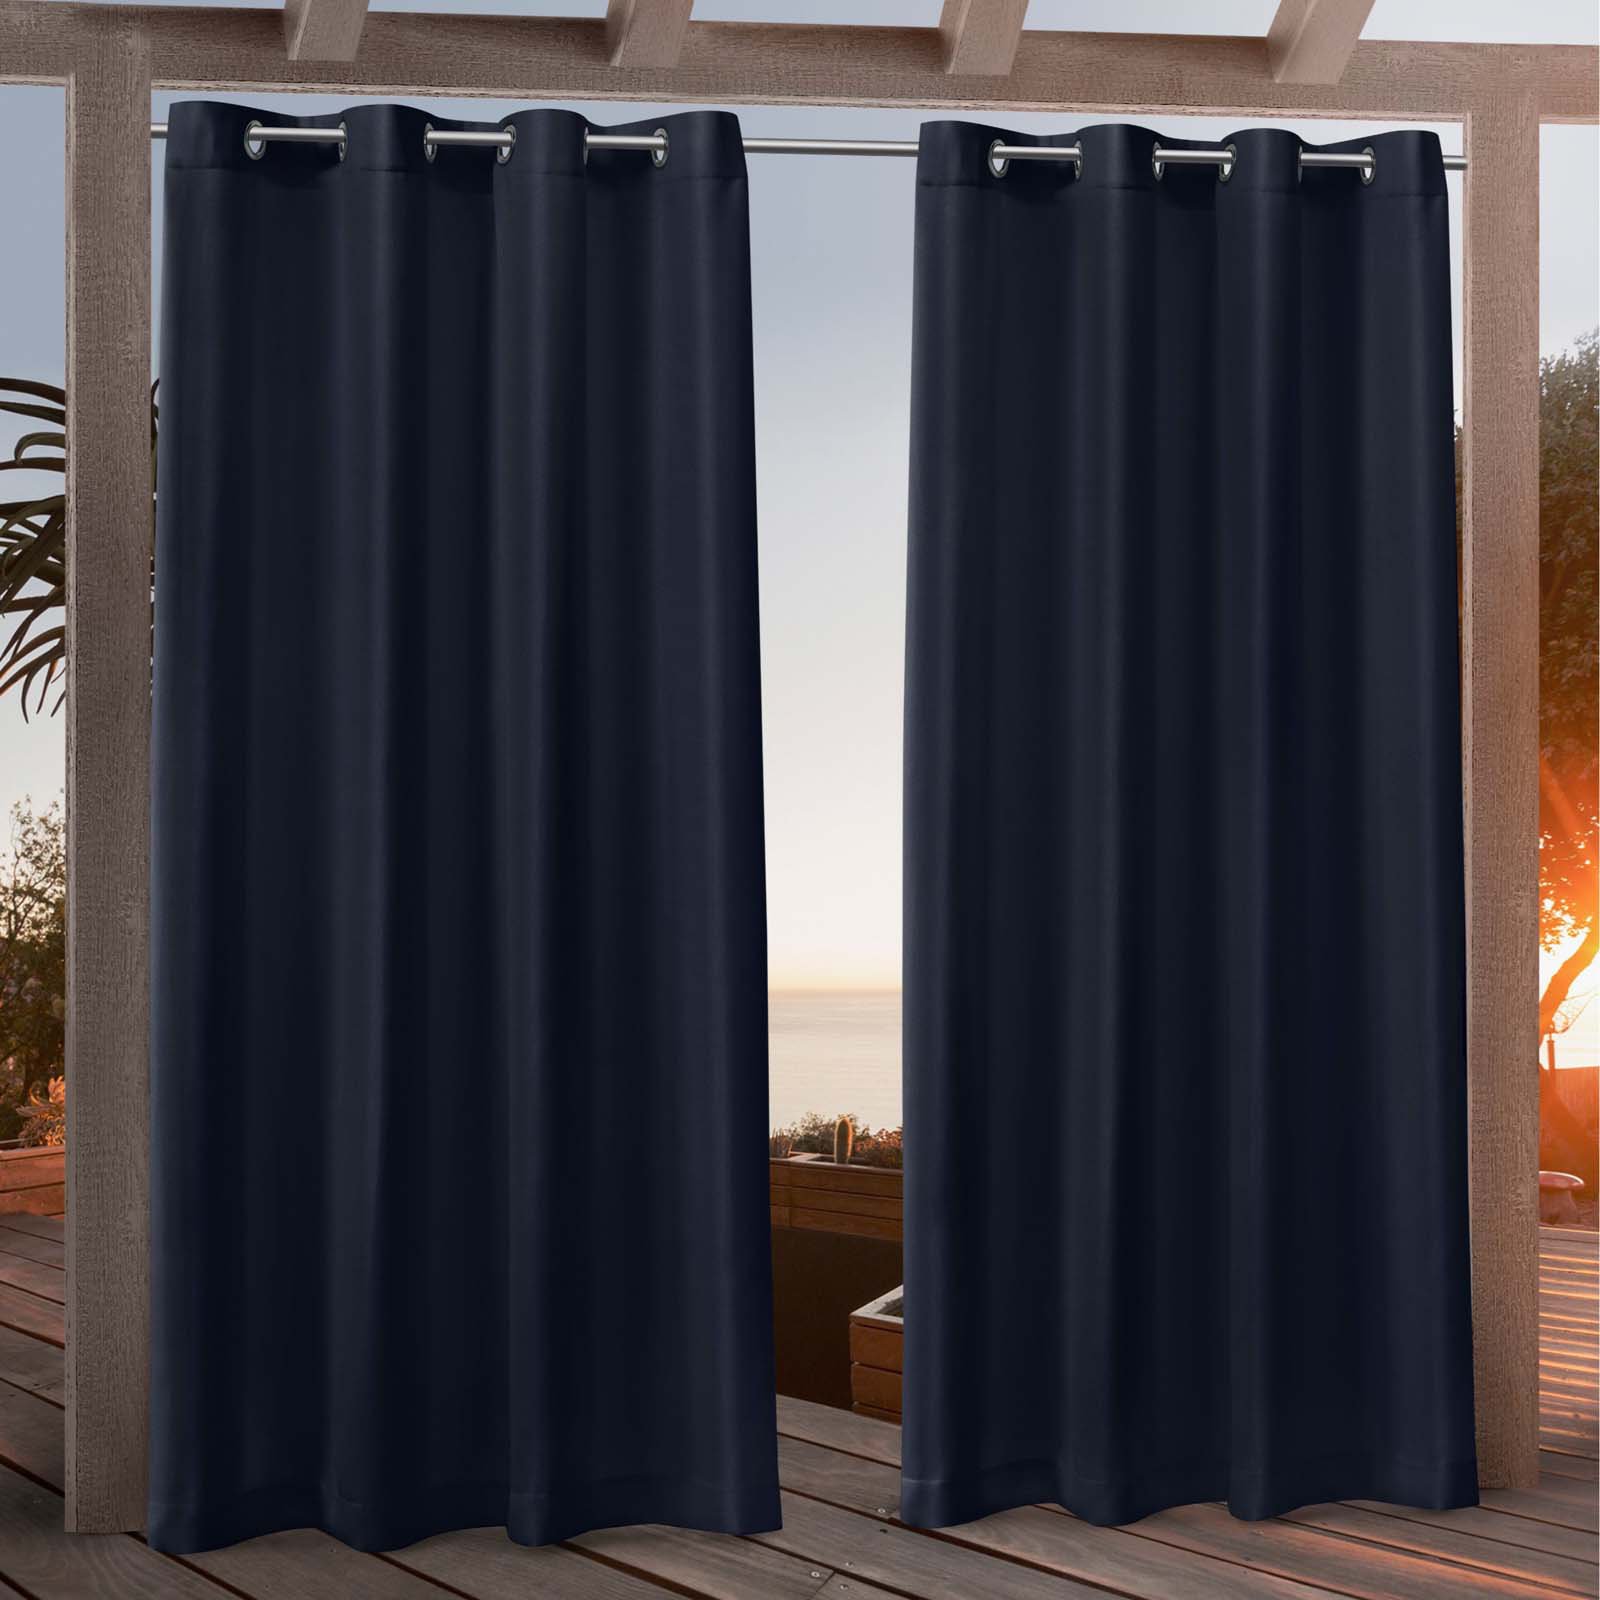 Nicole Miller New York Canvas Indoor/Outdoor Grommet Top Curtain Panel Pair - image 1 of 10